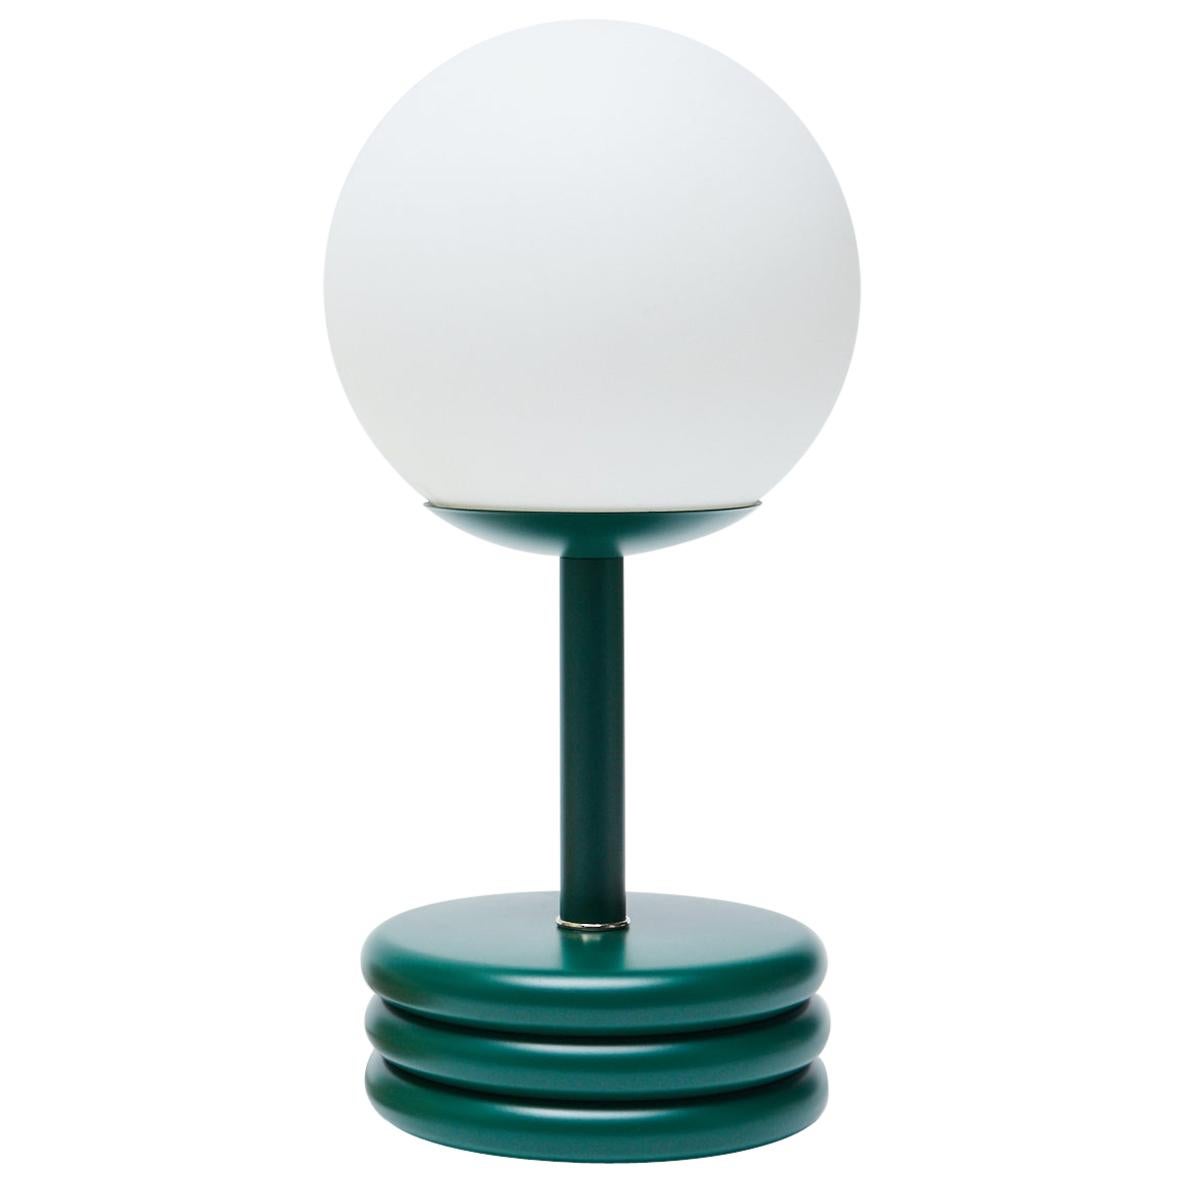 Pluma Table Lamp in Future Green Lacquer, Small by Steven Bukowski